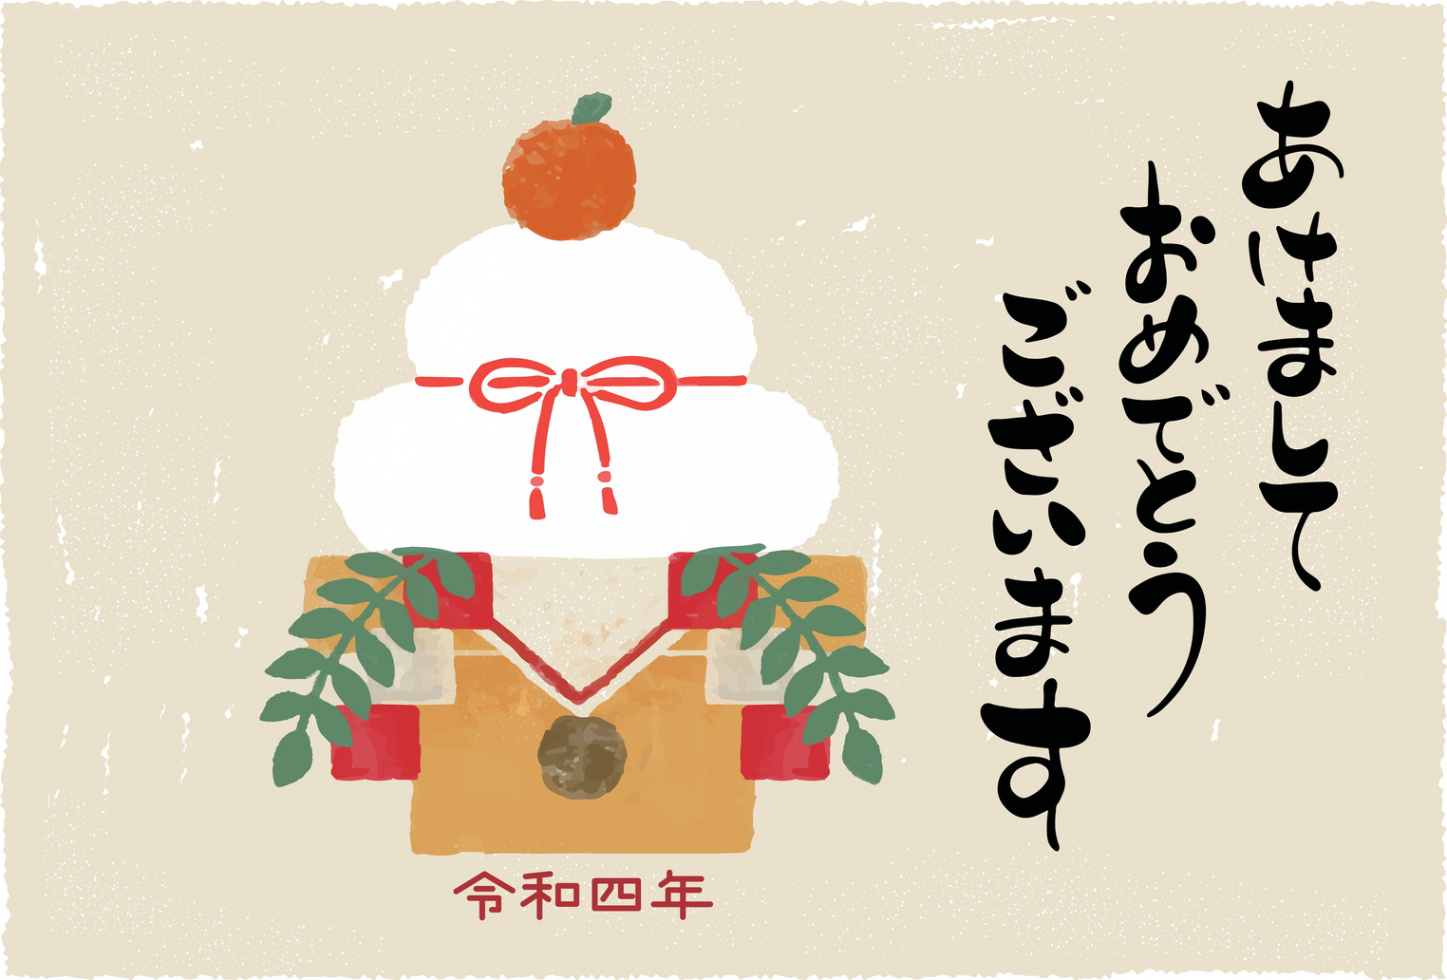 Nengajo: The Japanese New Year